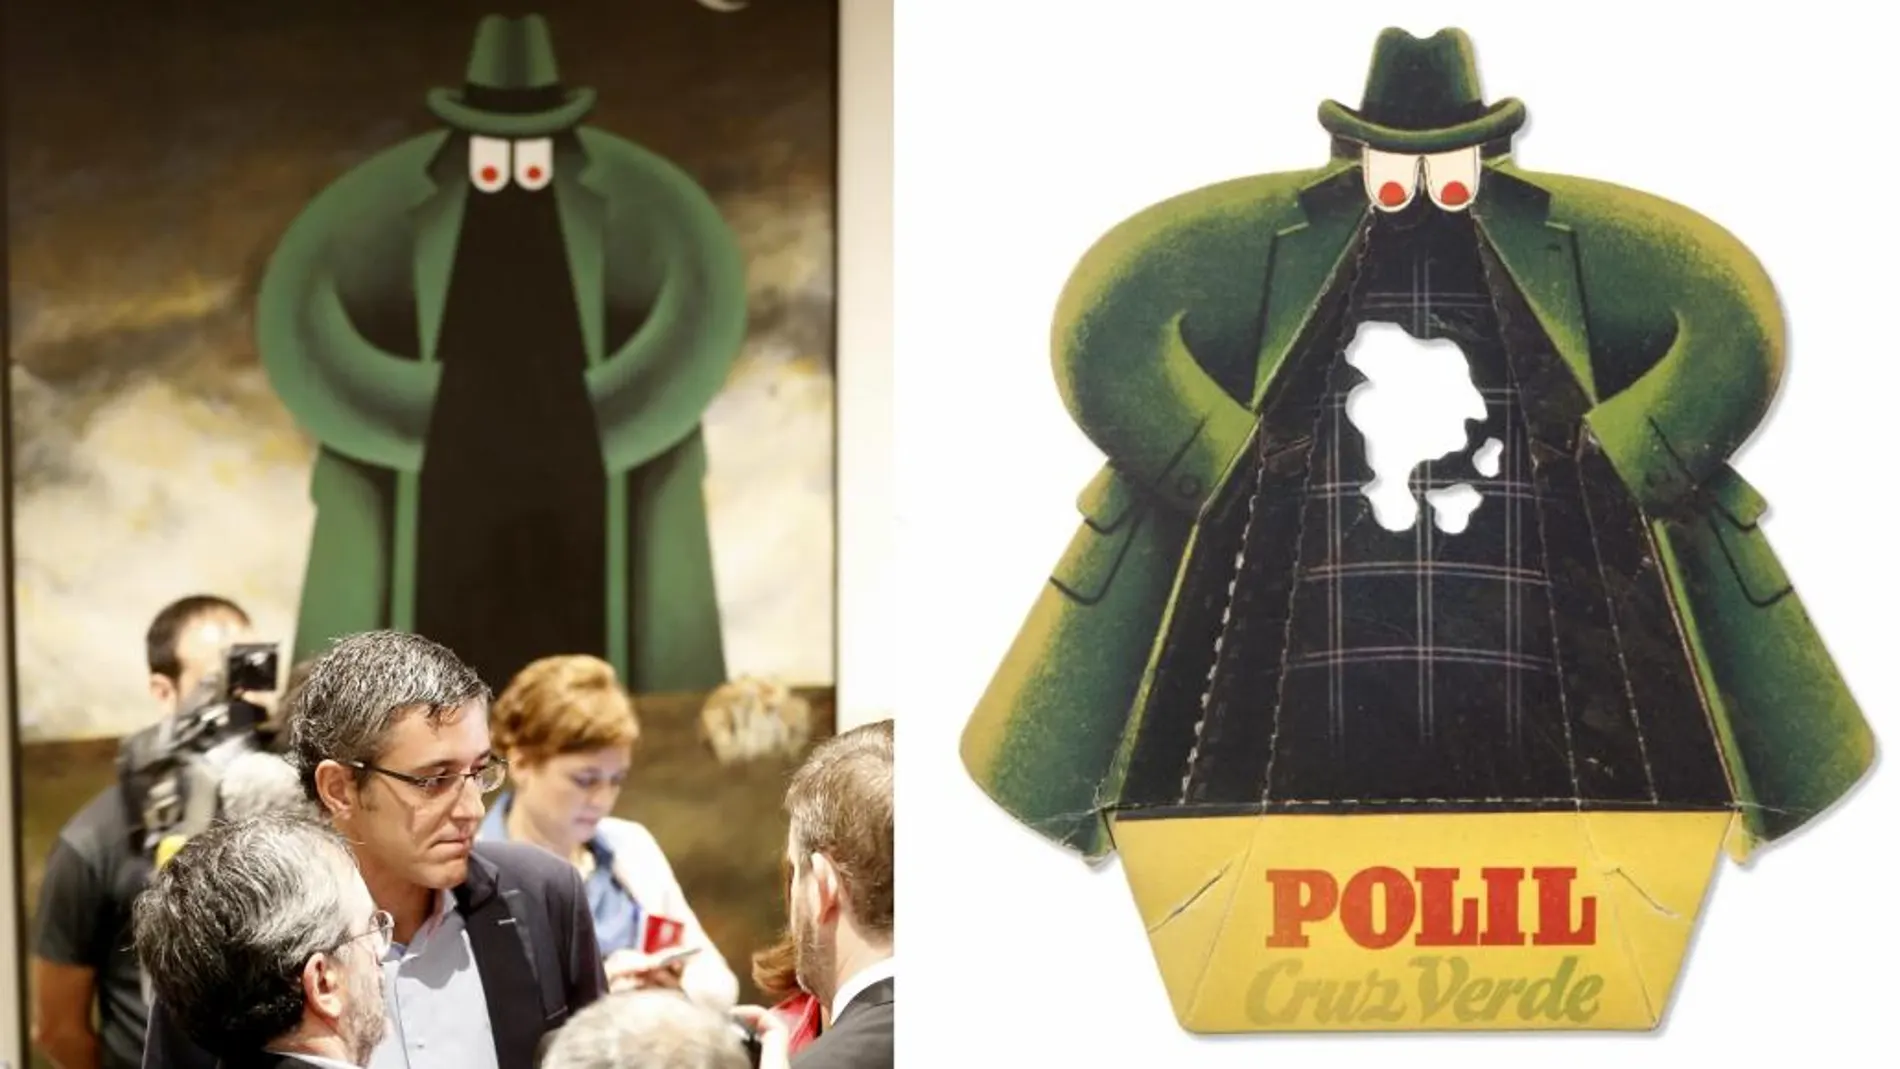 A la izquierda, Eduardo Madina junto al cuadro del Equipo Crónica; a la derecha, el logo de "Polil", el producto que protegía la ropa de las polillas.